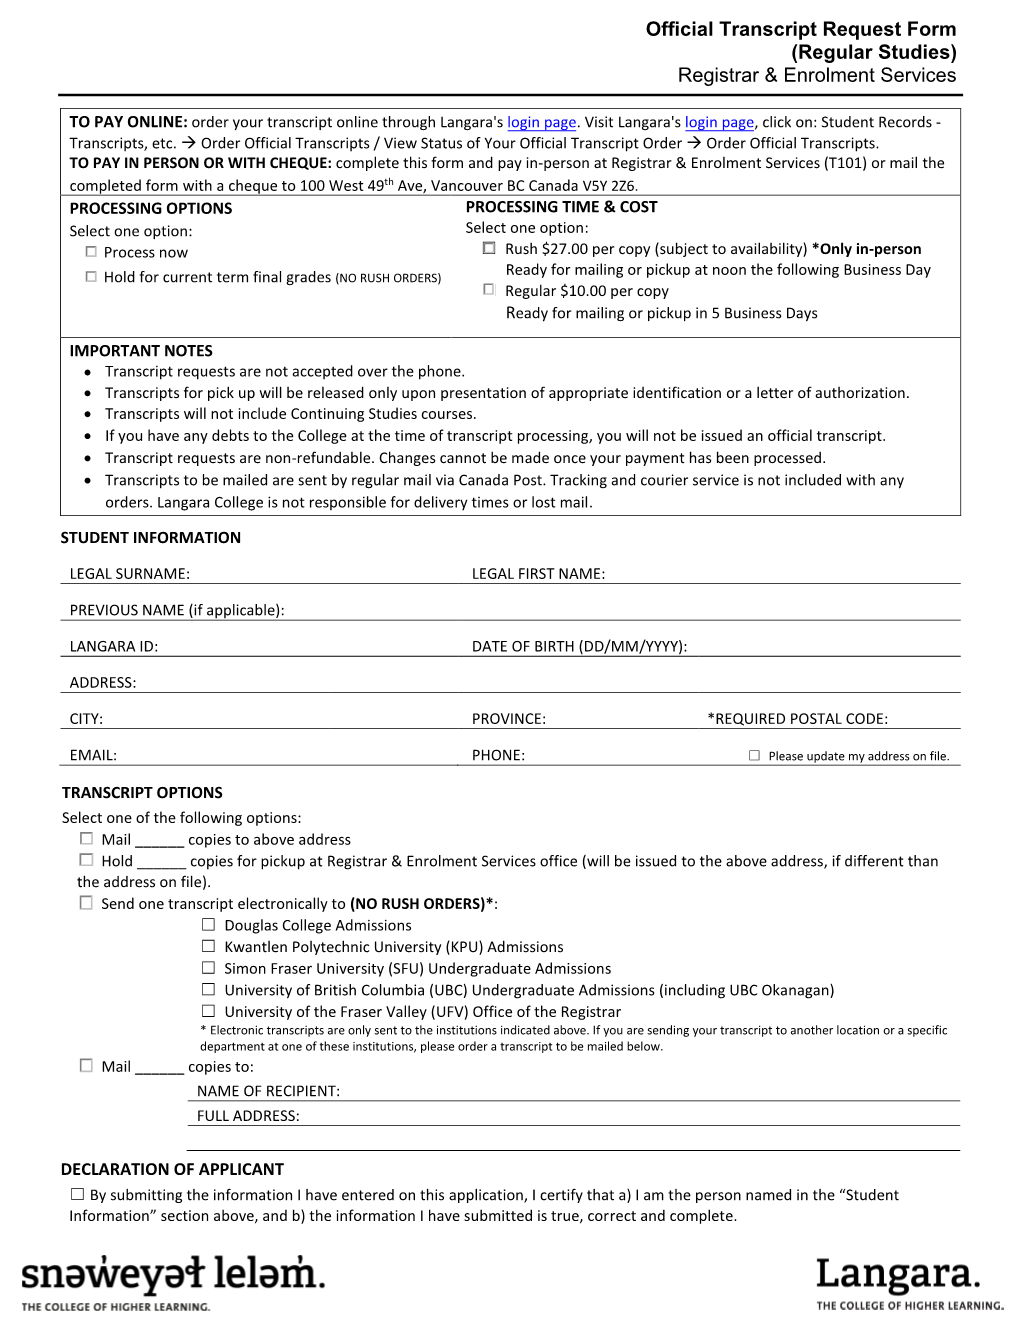 Official Transcript Request Form (Regular Studies) Registrar & Enrolment Services